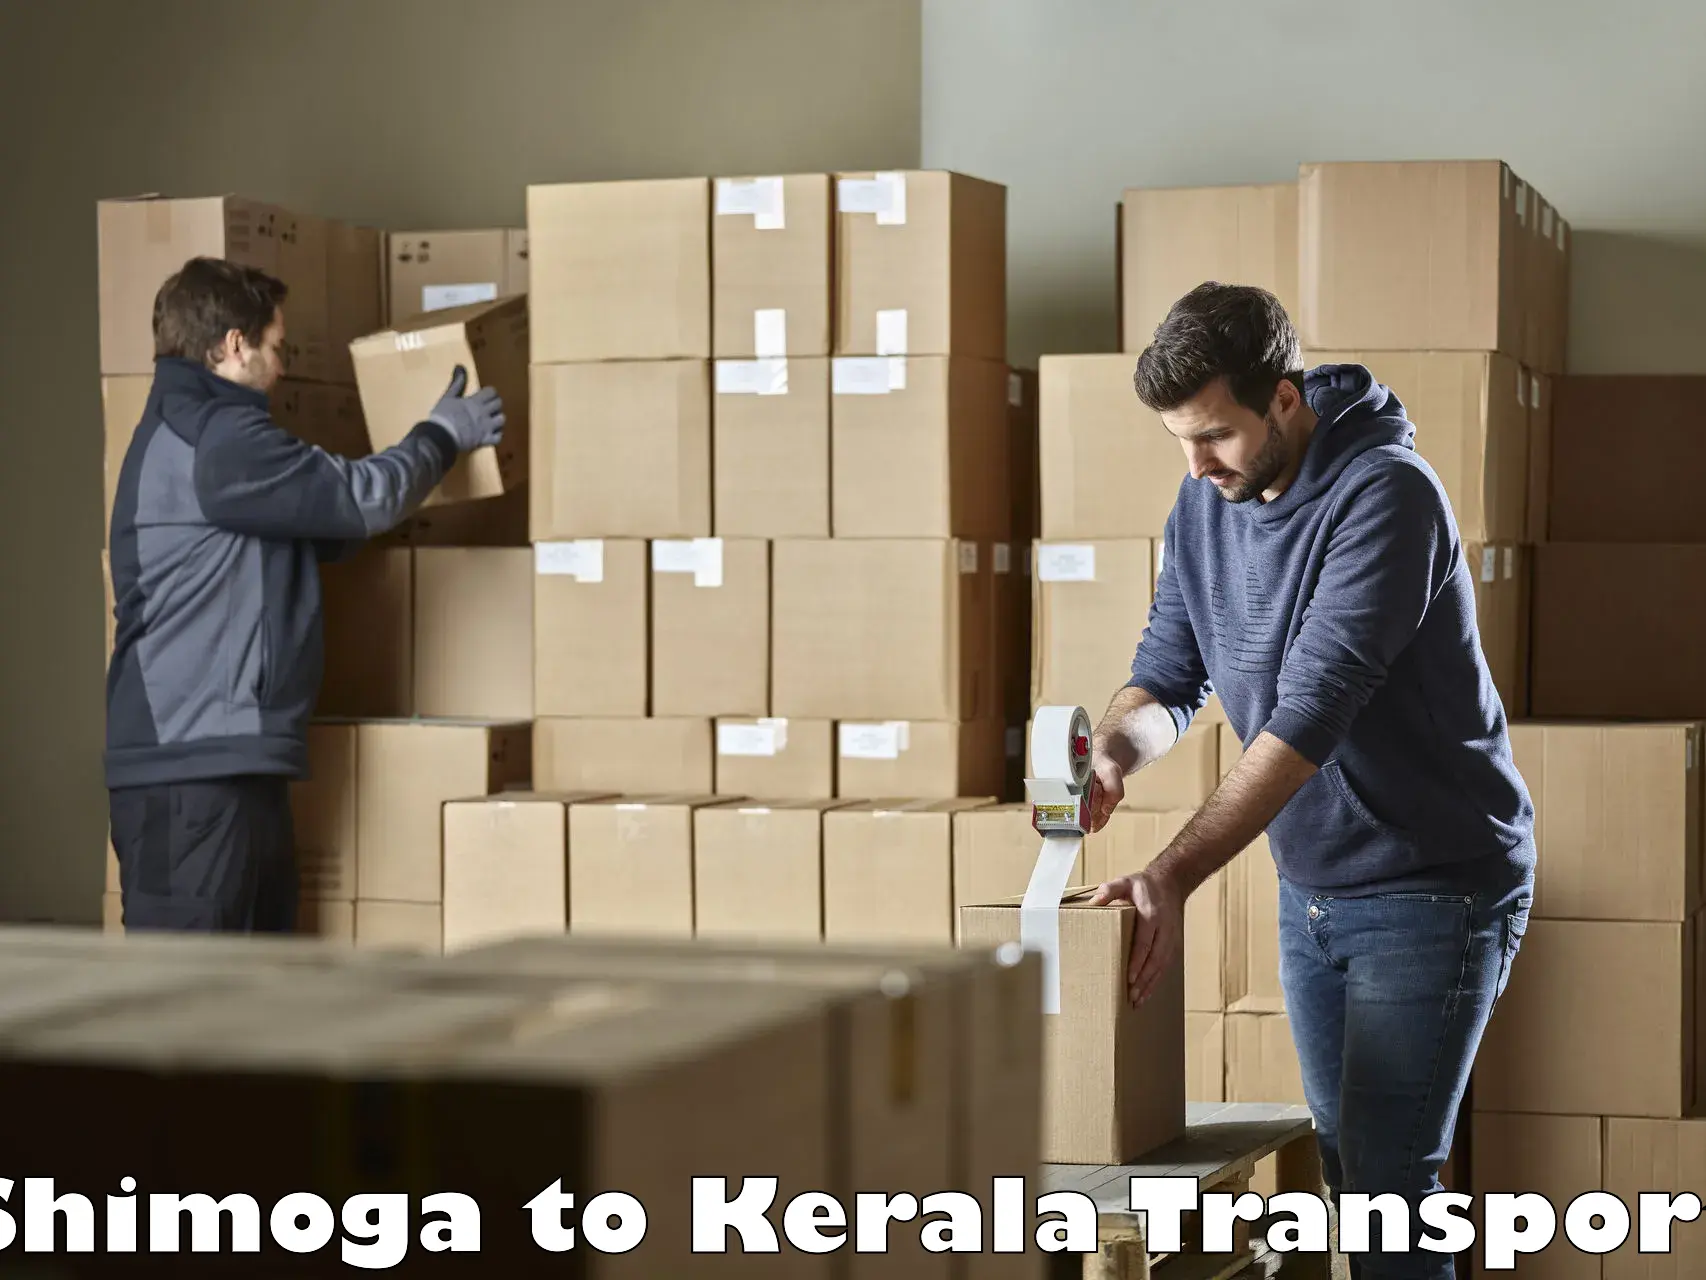 Vehicle parcel service Shimoga to Kalluvathukkal